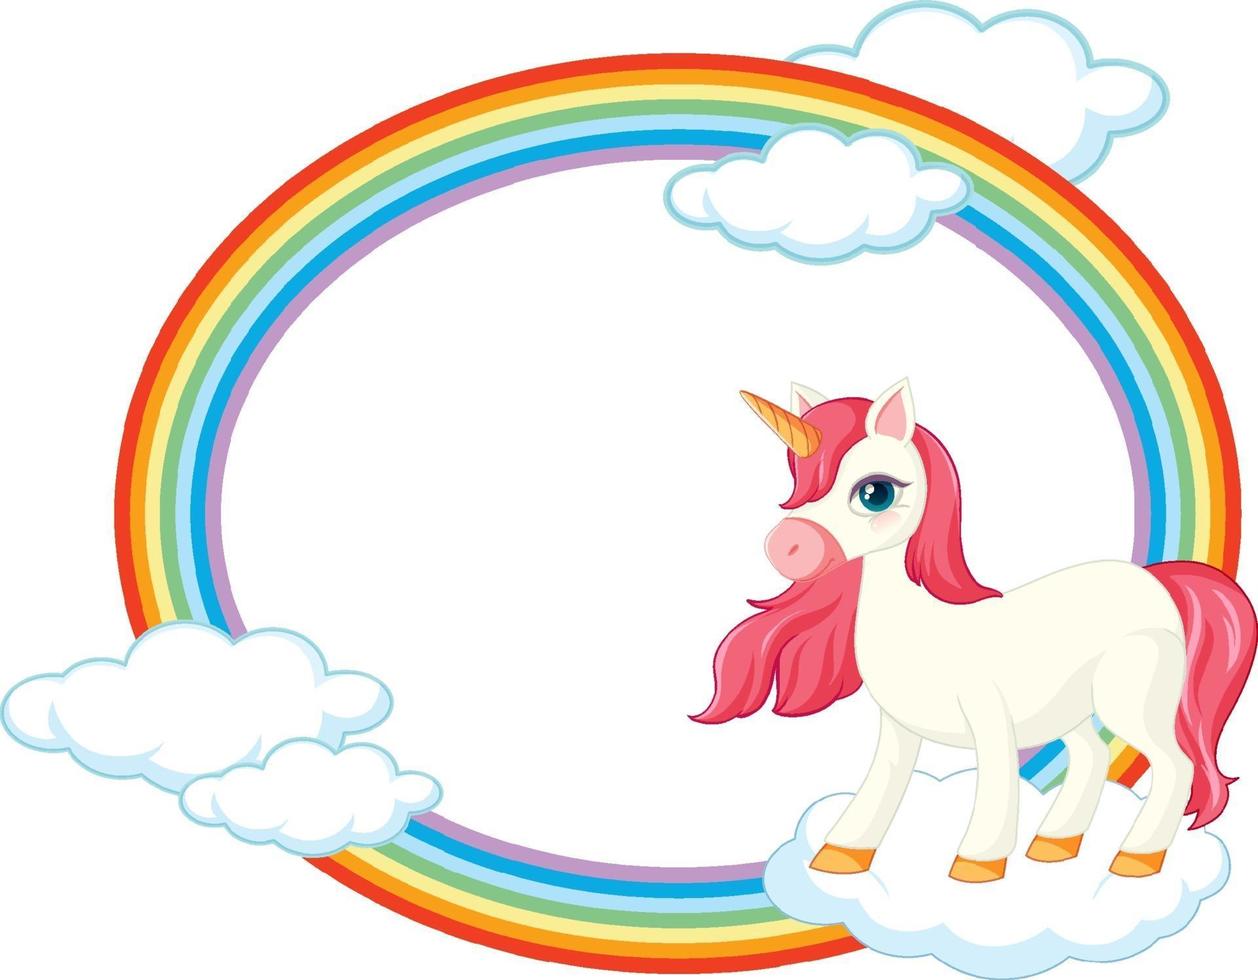 Rainbow frame with cute unicorn cartoon character vector